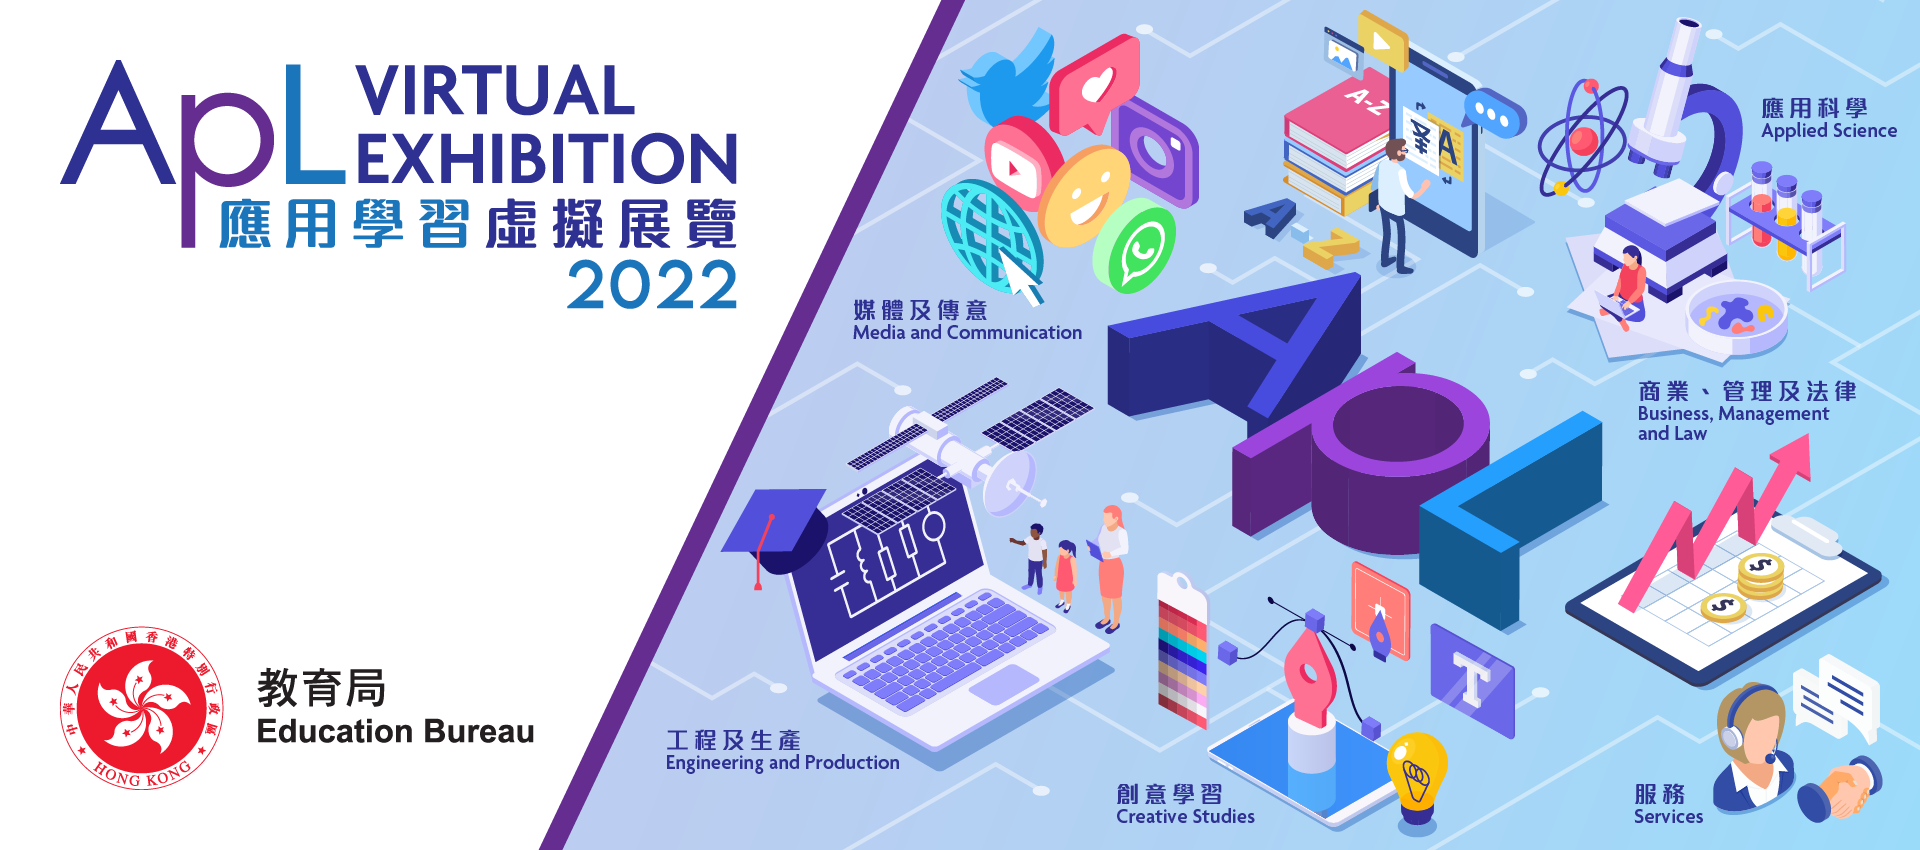 教育局與應用學習課程的提供機構合辦「應用學習虛擬展覽2022」。